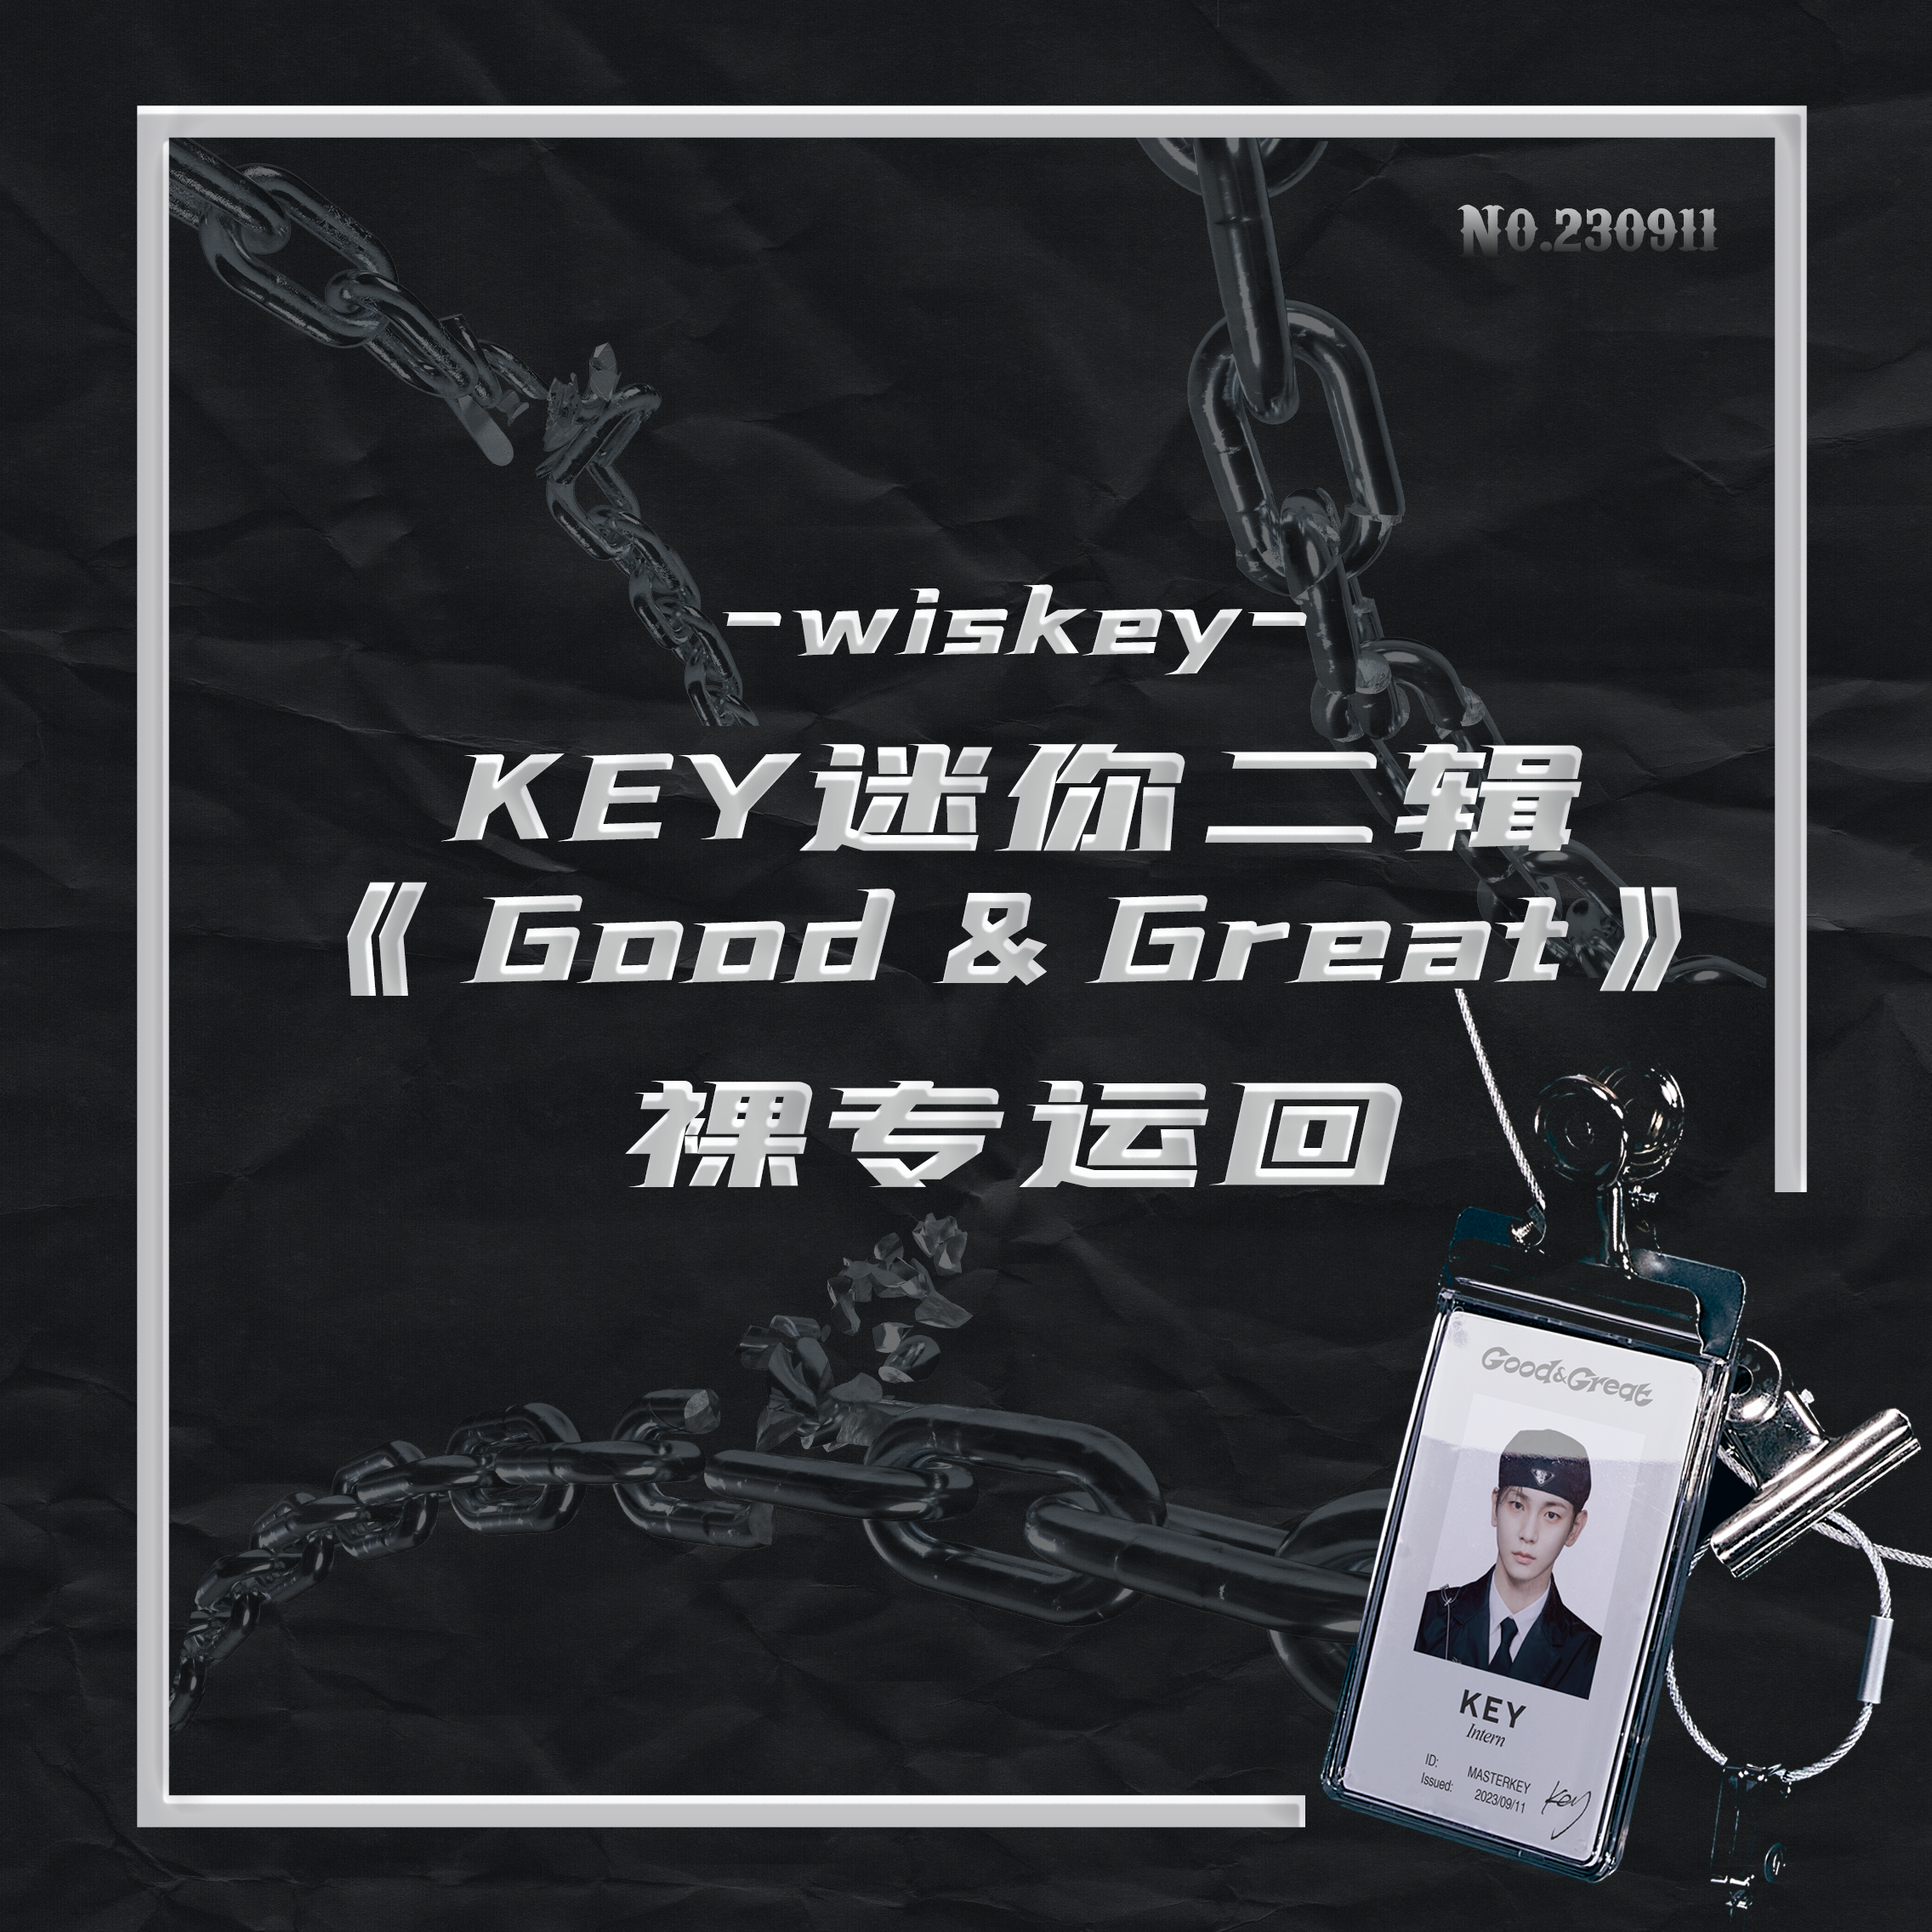 [全款 裸专]] Key - 迷你2辑 [Good & Great]_WisKEY_金起范安利博